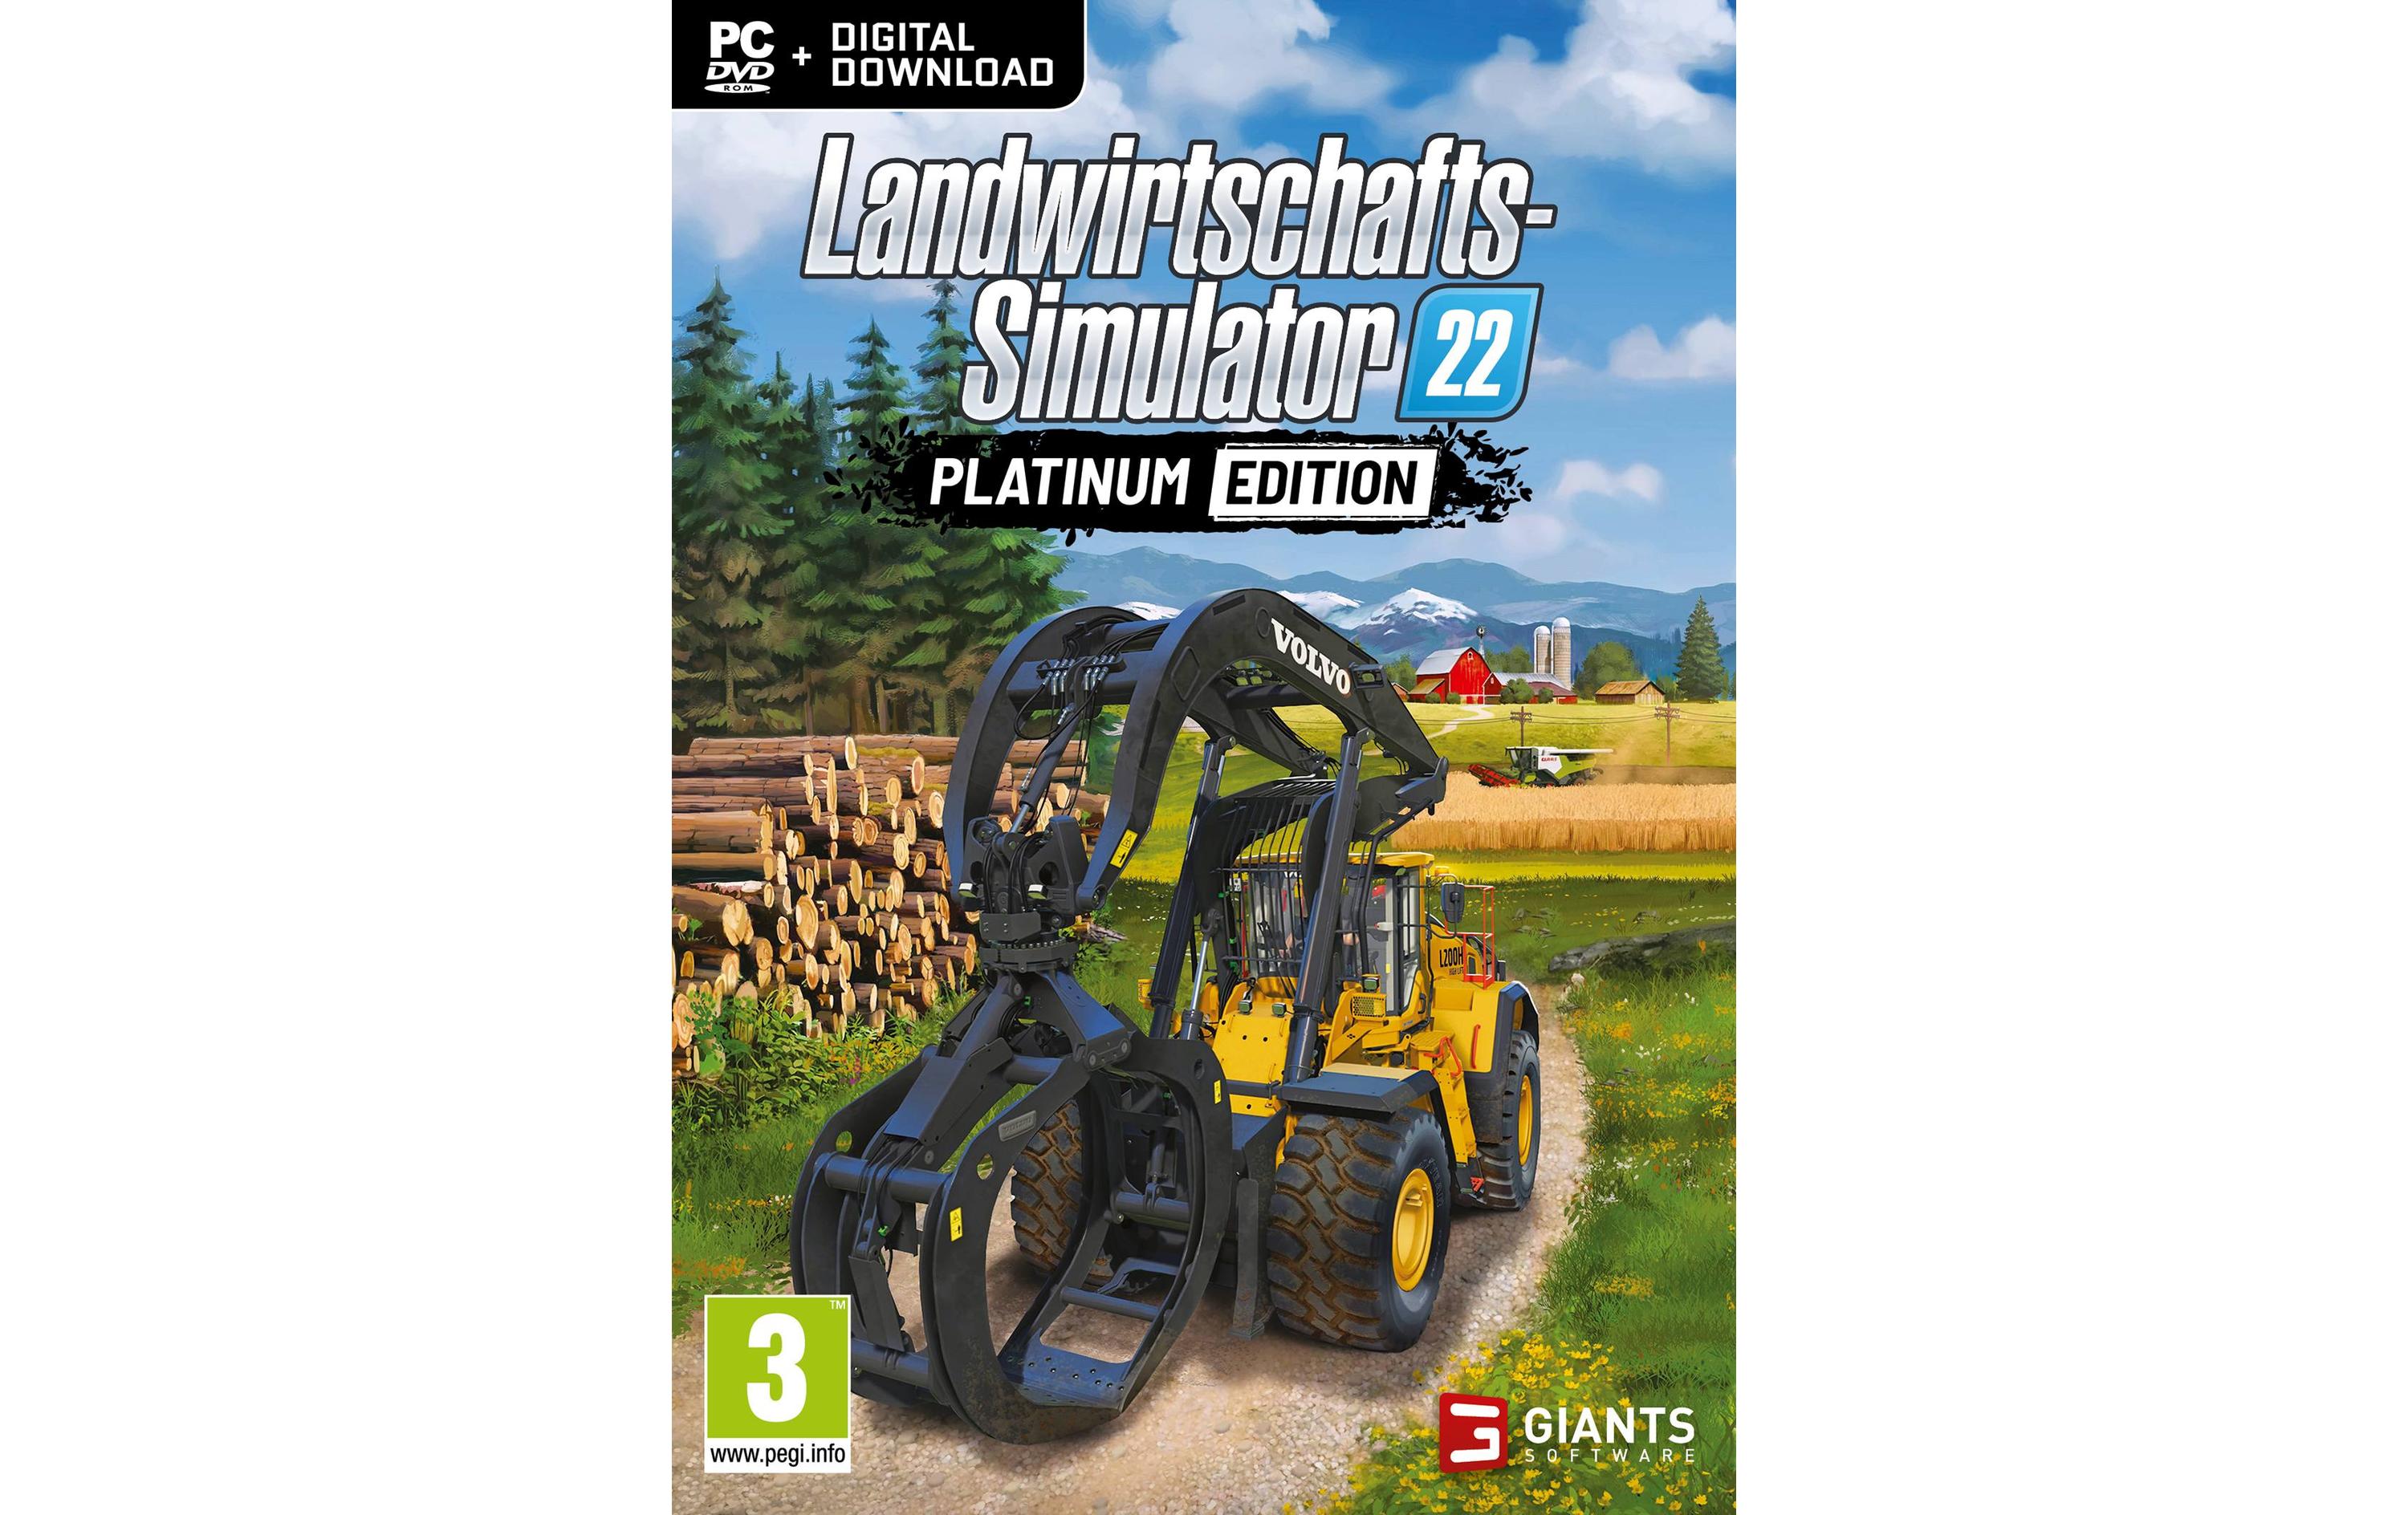 Landwirtschafts Simulator 22 Platinum Edition - PC Games